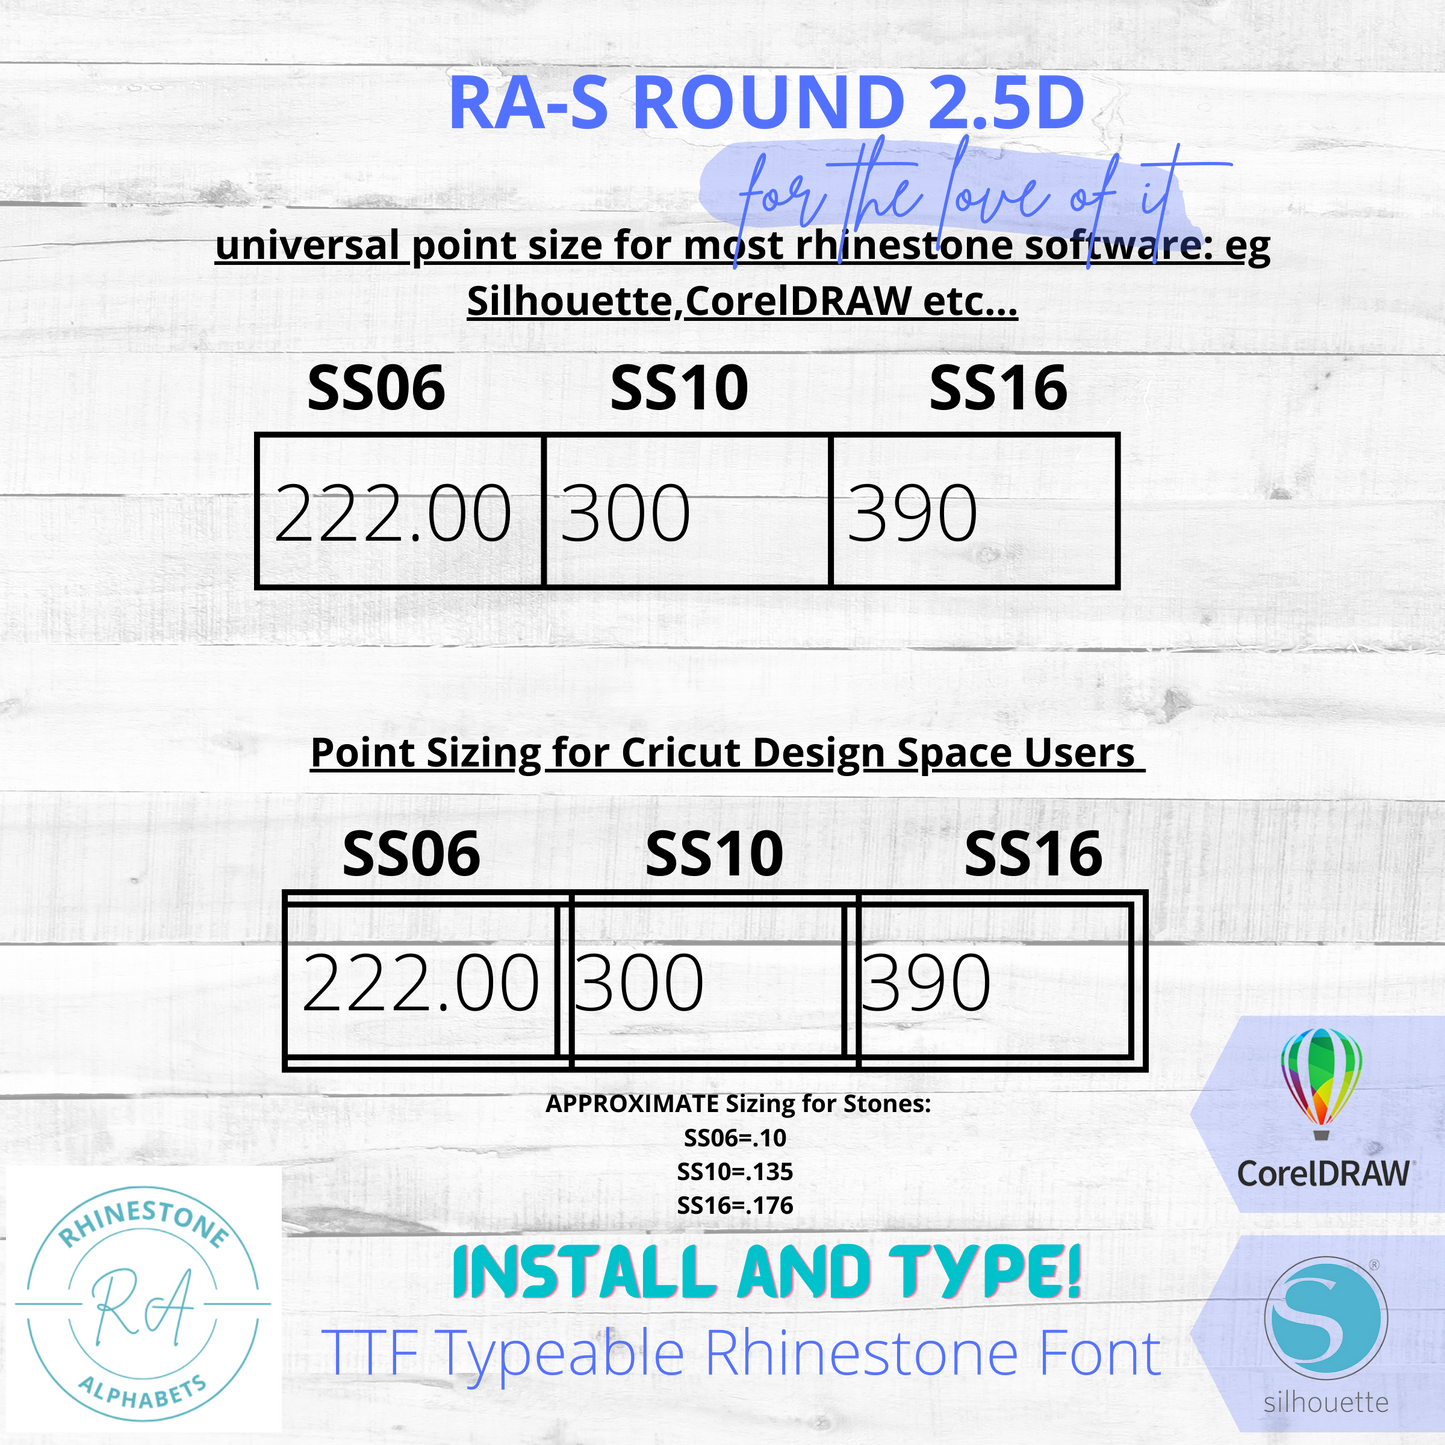 RA-S Round 2.5D